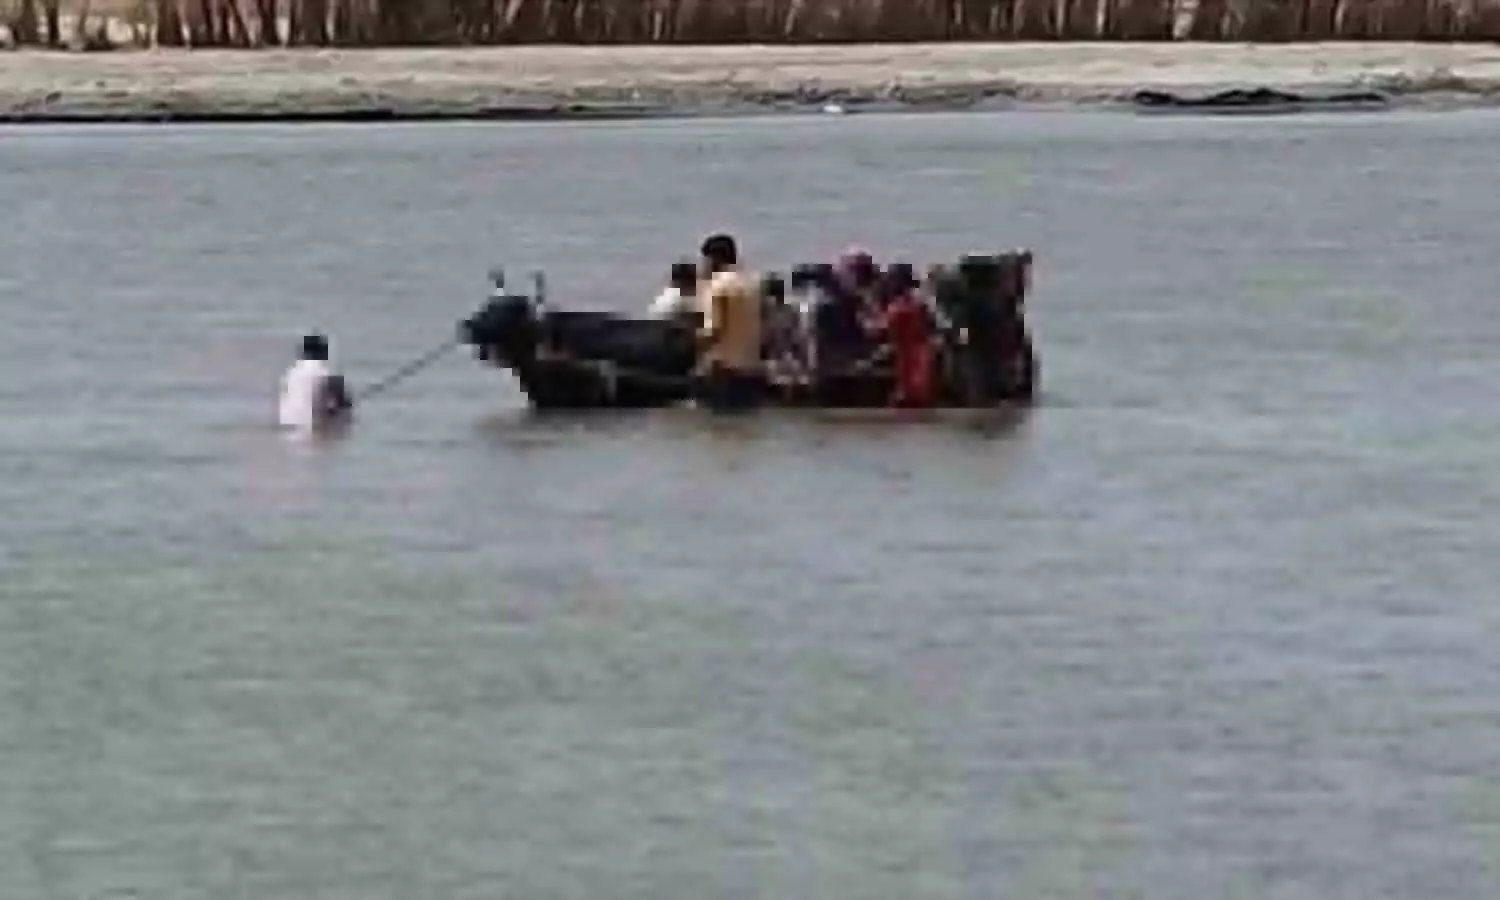 Baghpat Big Accident Averted: नदी पार करते समय बीच में फंसी बैलगाड़ी, सवार लोगों ऐसे बचाया गया, अवैध खनन है कारण